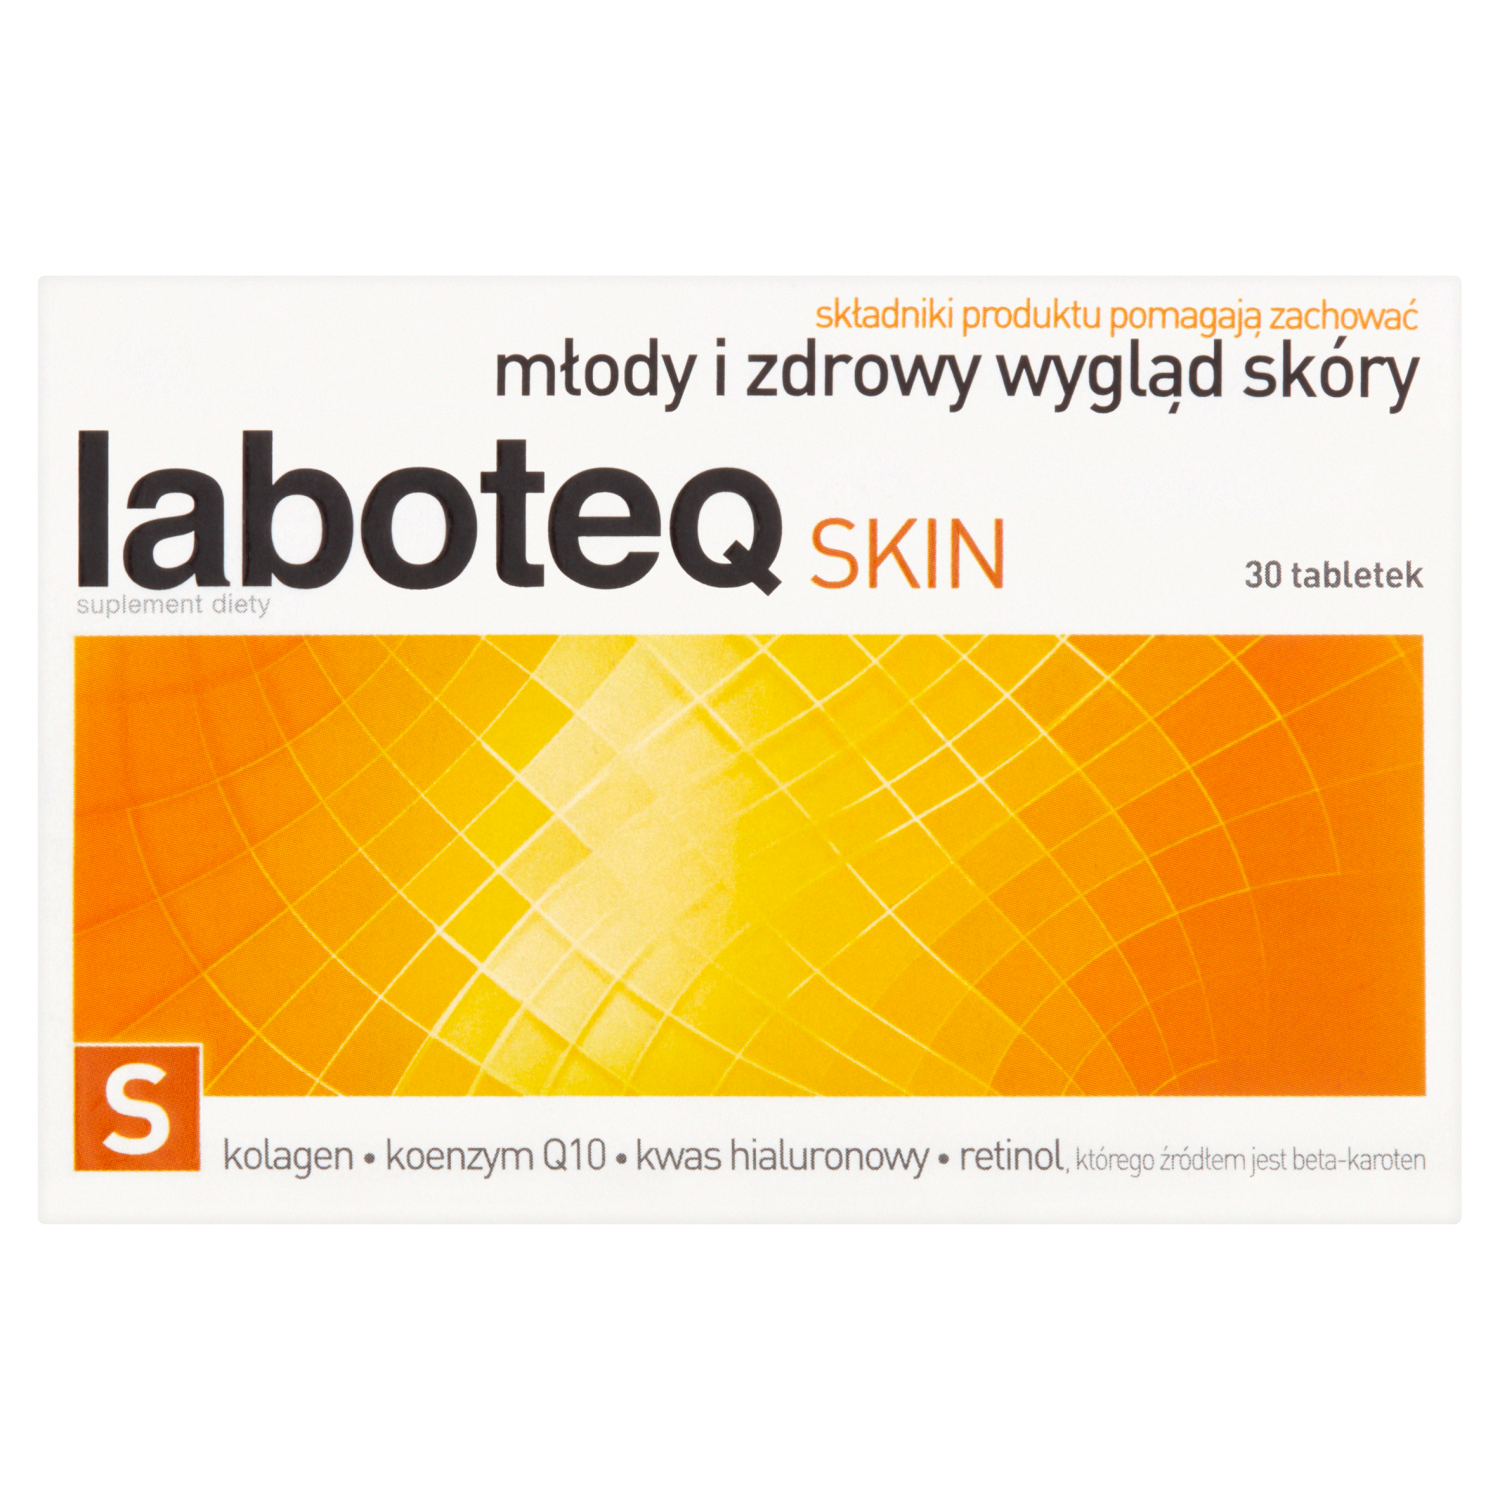 Laboteq skin биологически активная добавка, 30 таблеток/1 упаковка